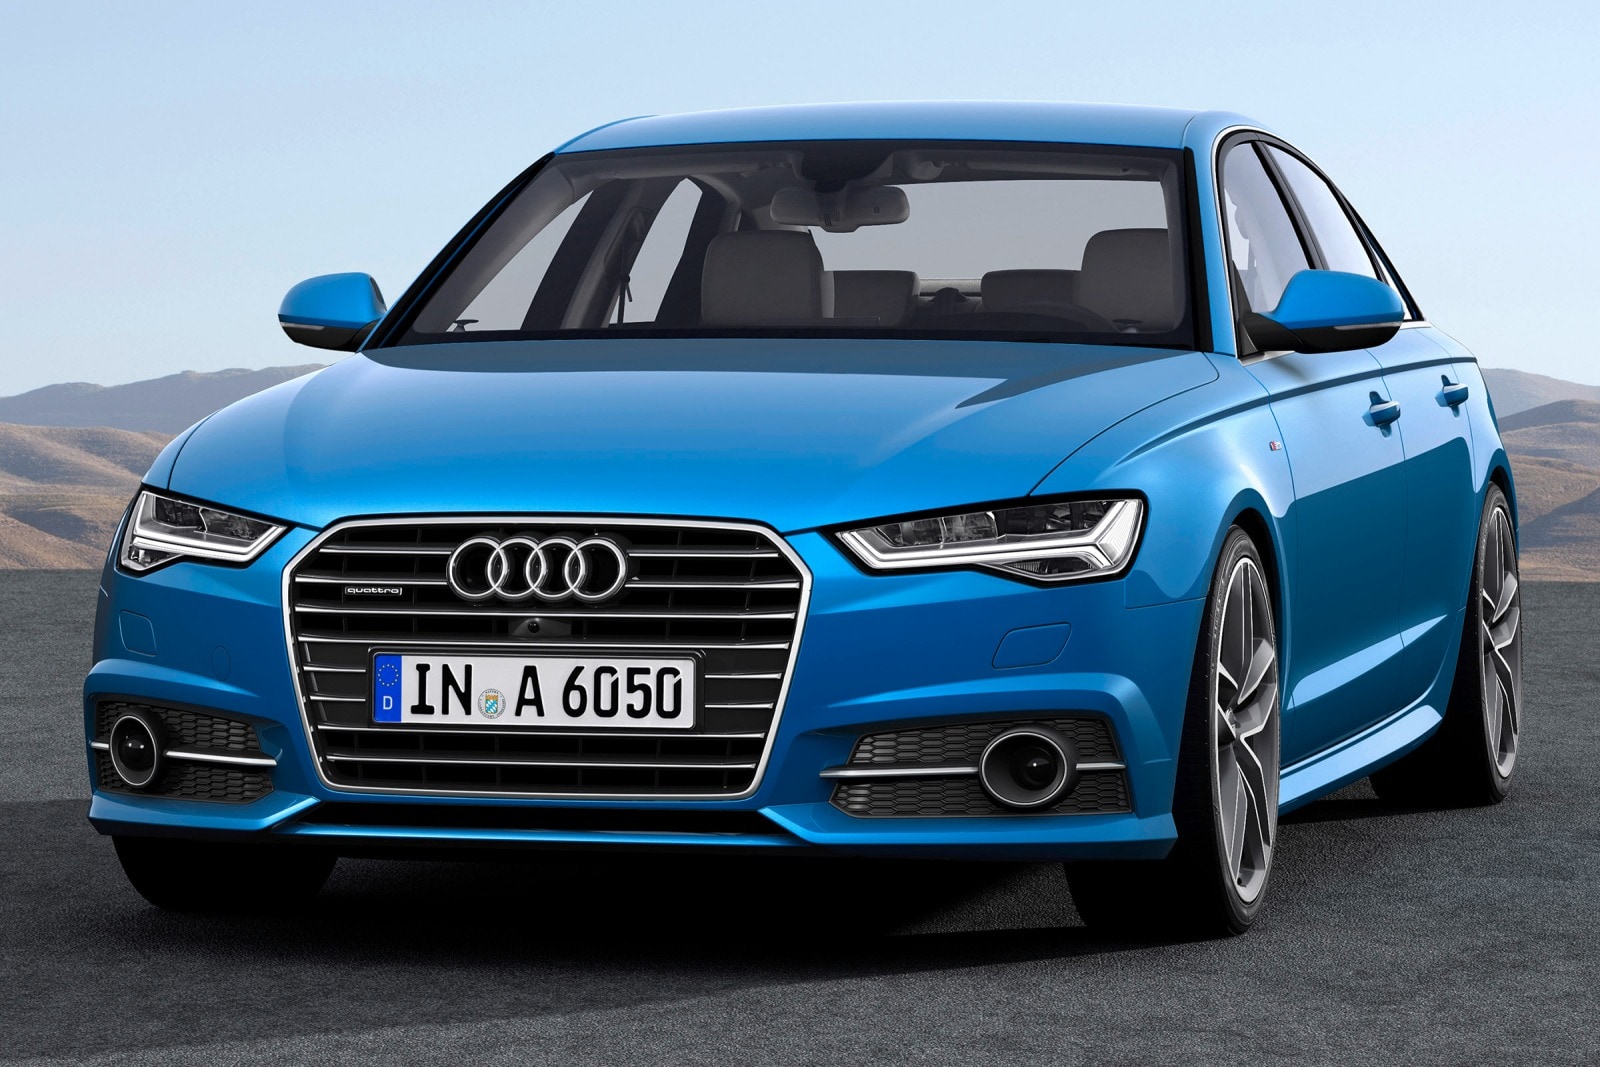 2016 Audi A6 Review & Ratings | Edmunds